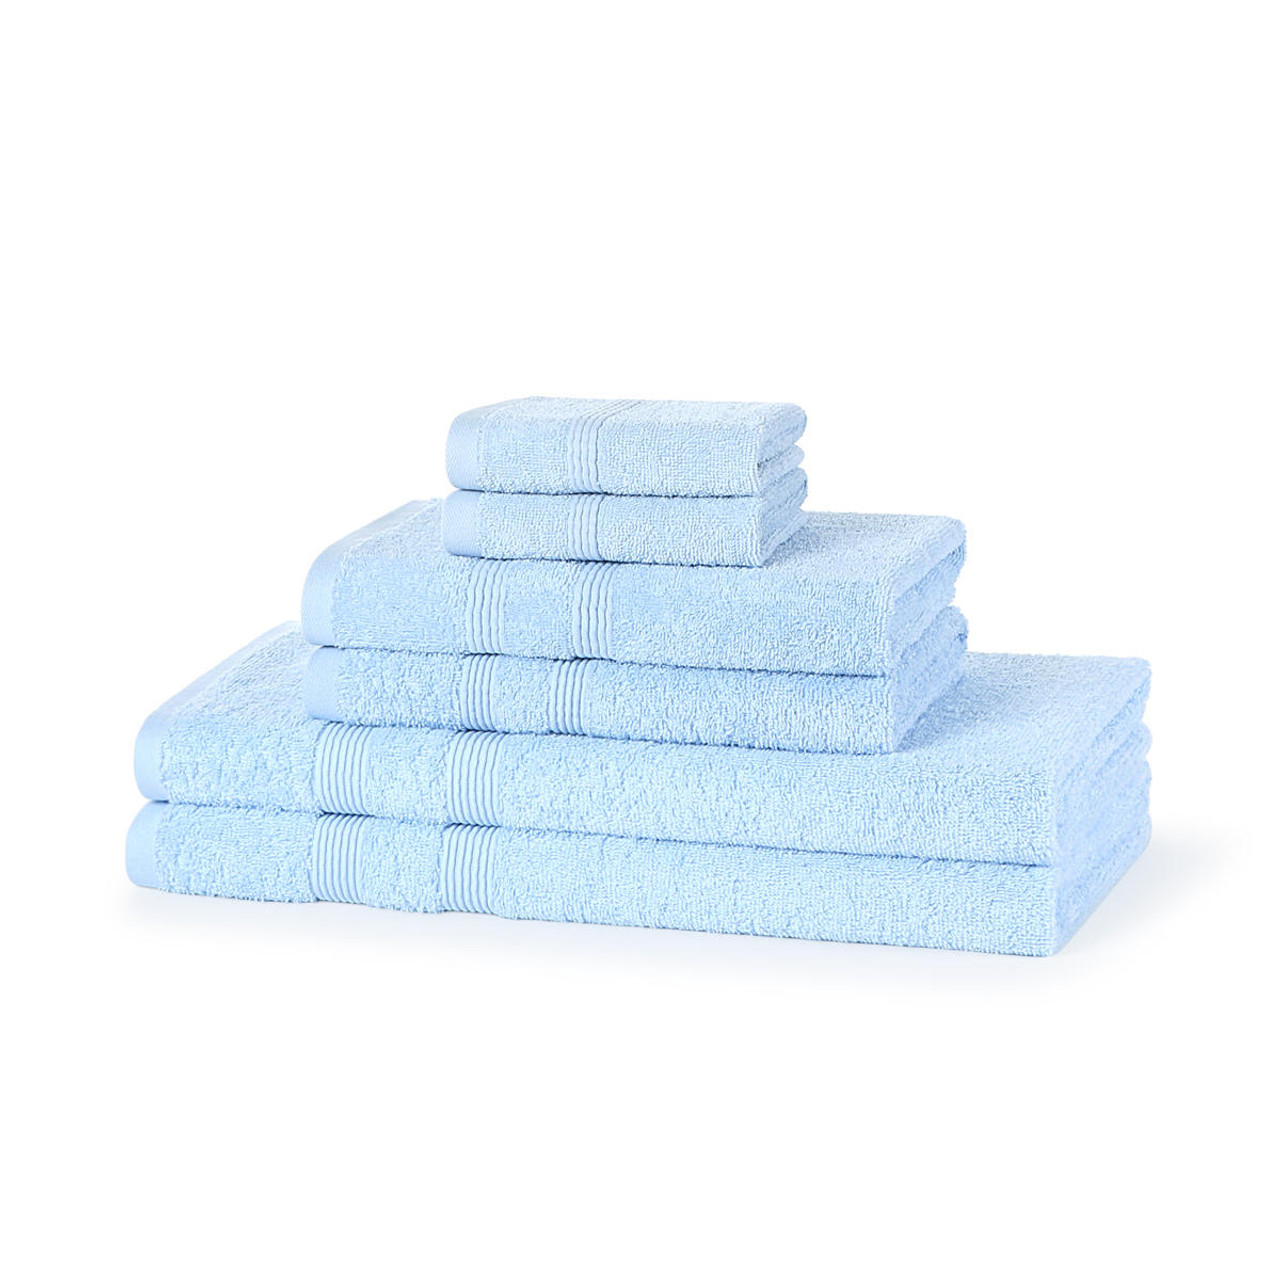 6 Piece 500GSM Towel Bale - 2 Face Cloths, 2 Hand Towels, 2 Bath Towels ...